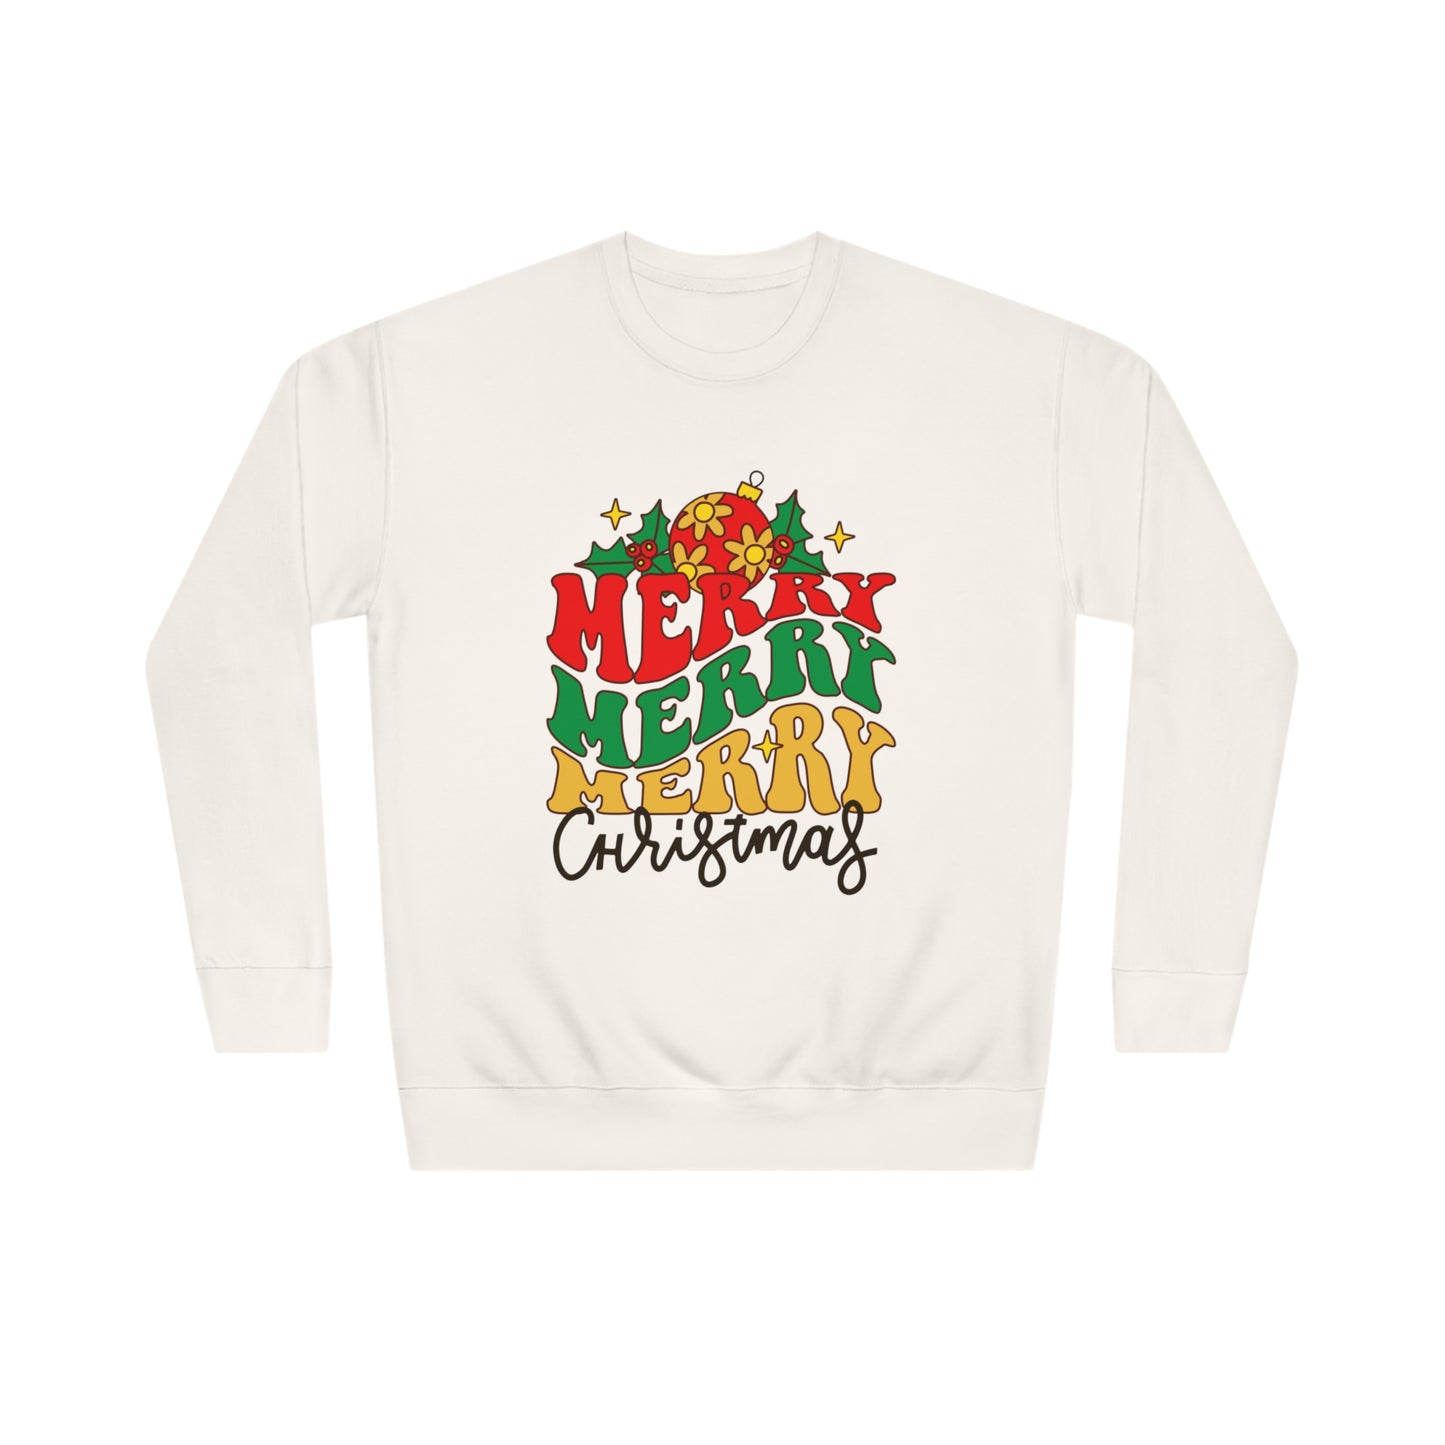 Unisex Merry Christmas Crew Sweatshirt